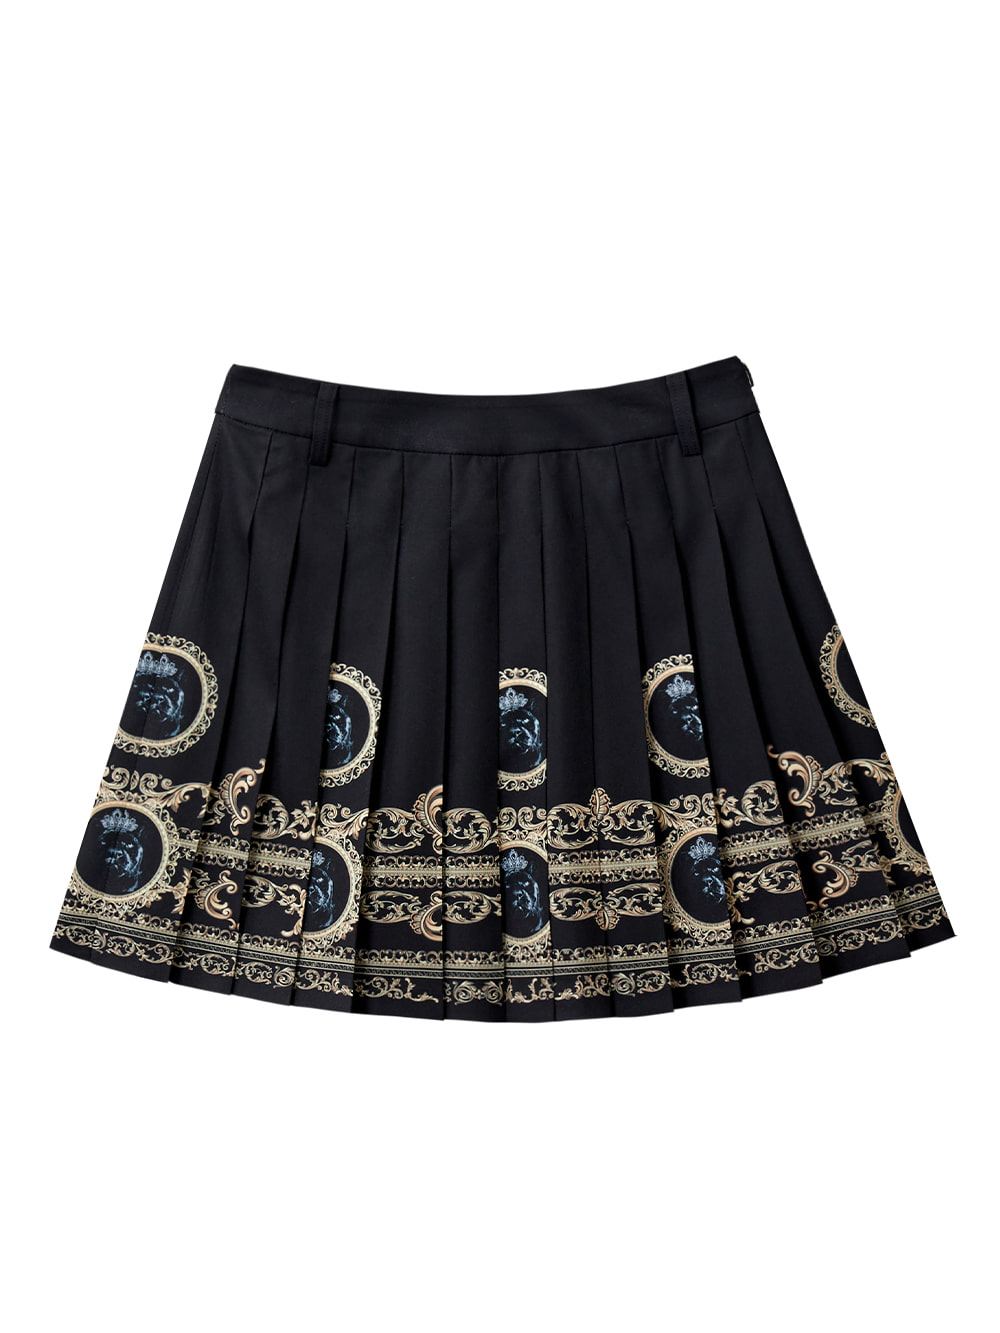 UTAA Gold Empire Pleats Skirt (UB2SKF330BK)